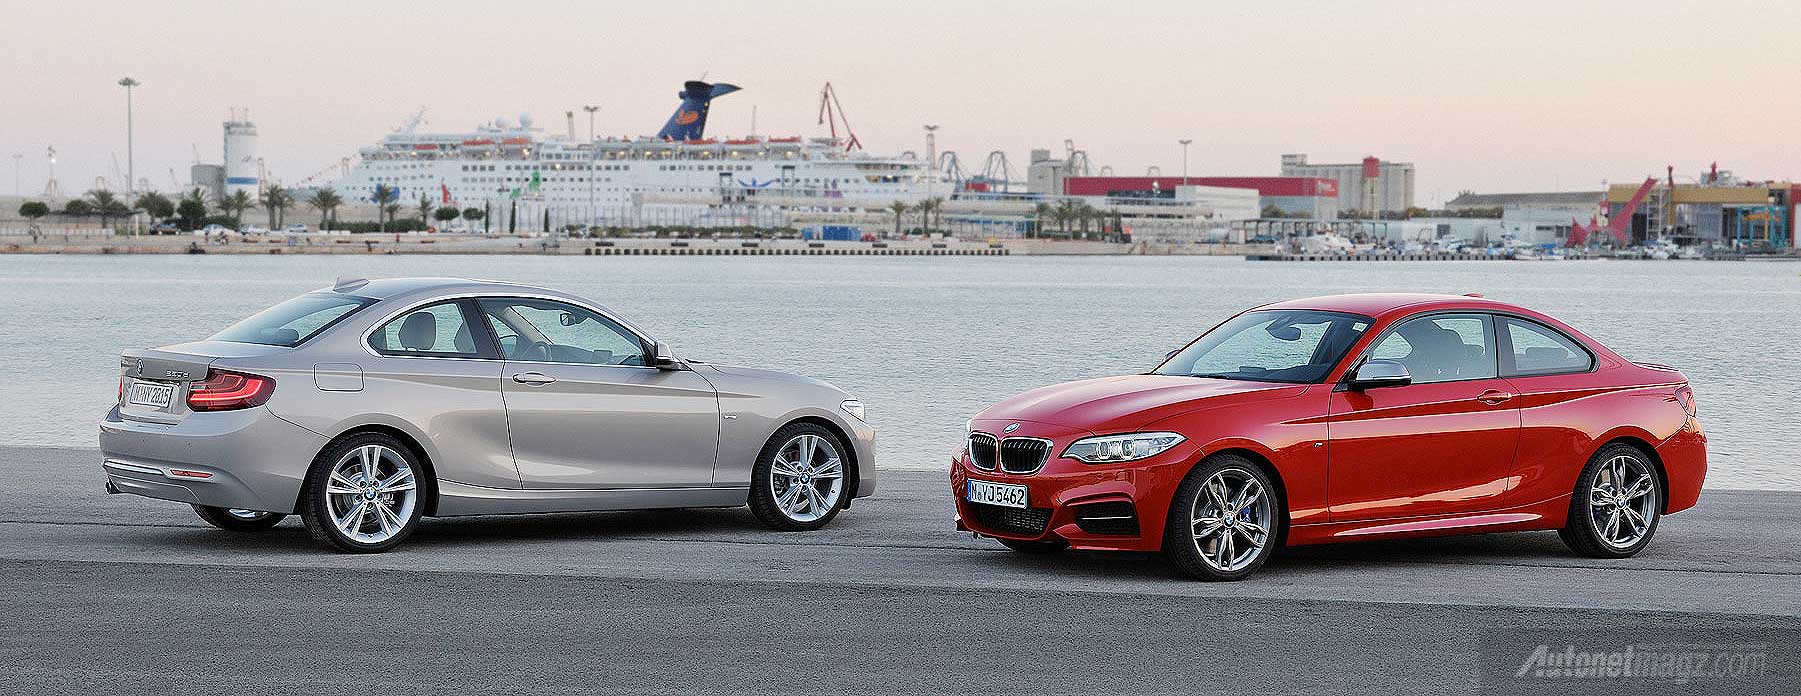 BMW, BMW baru tahun 2014: BMW Akan Hadirkan 10 Mobil Baru di Tahun 2014